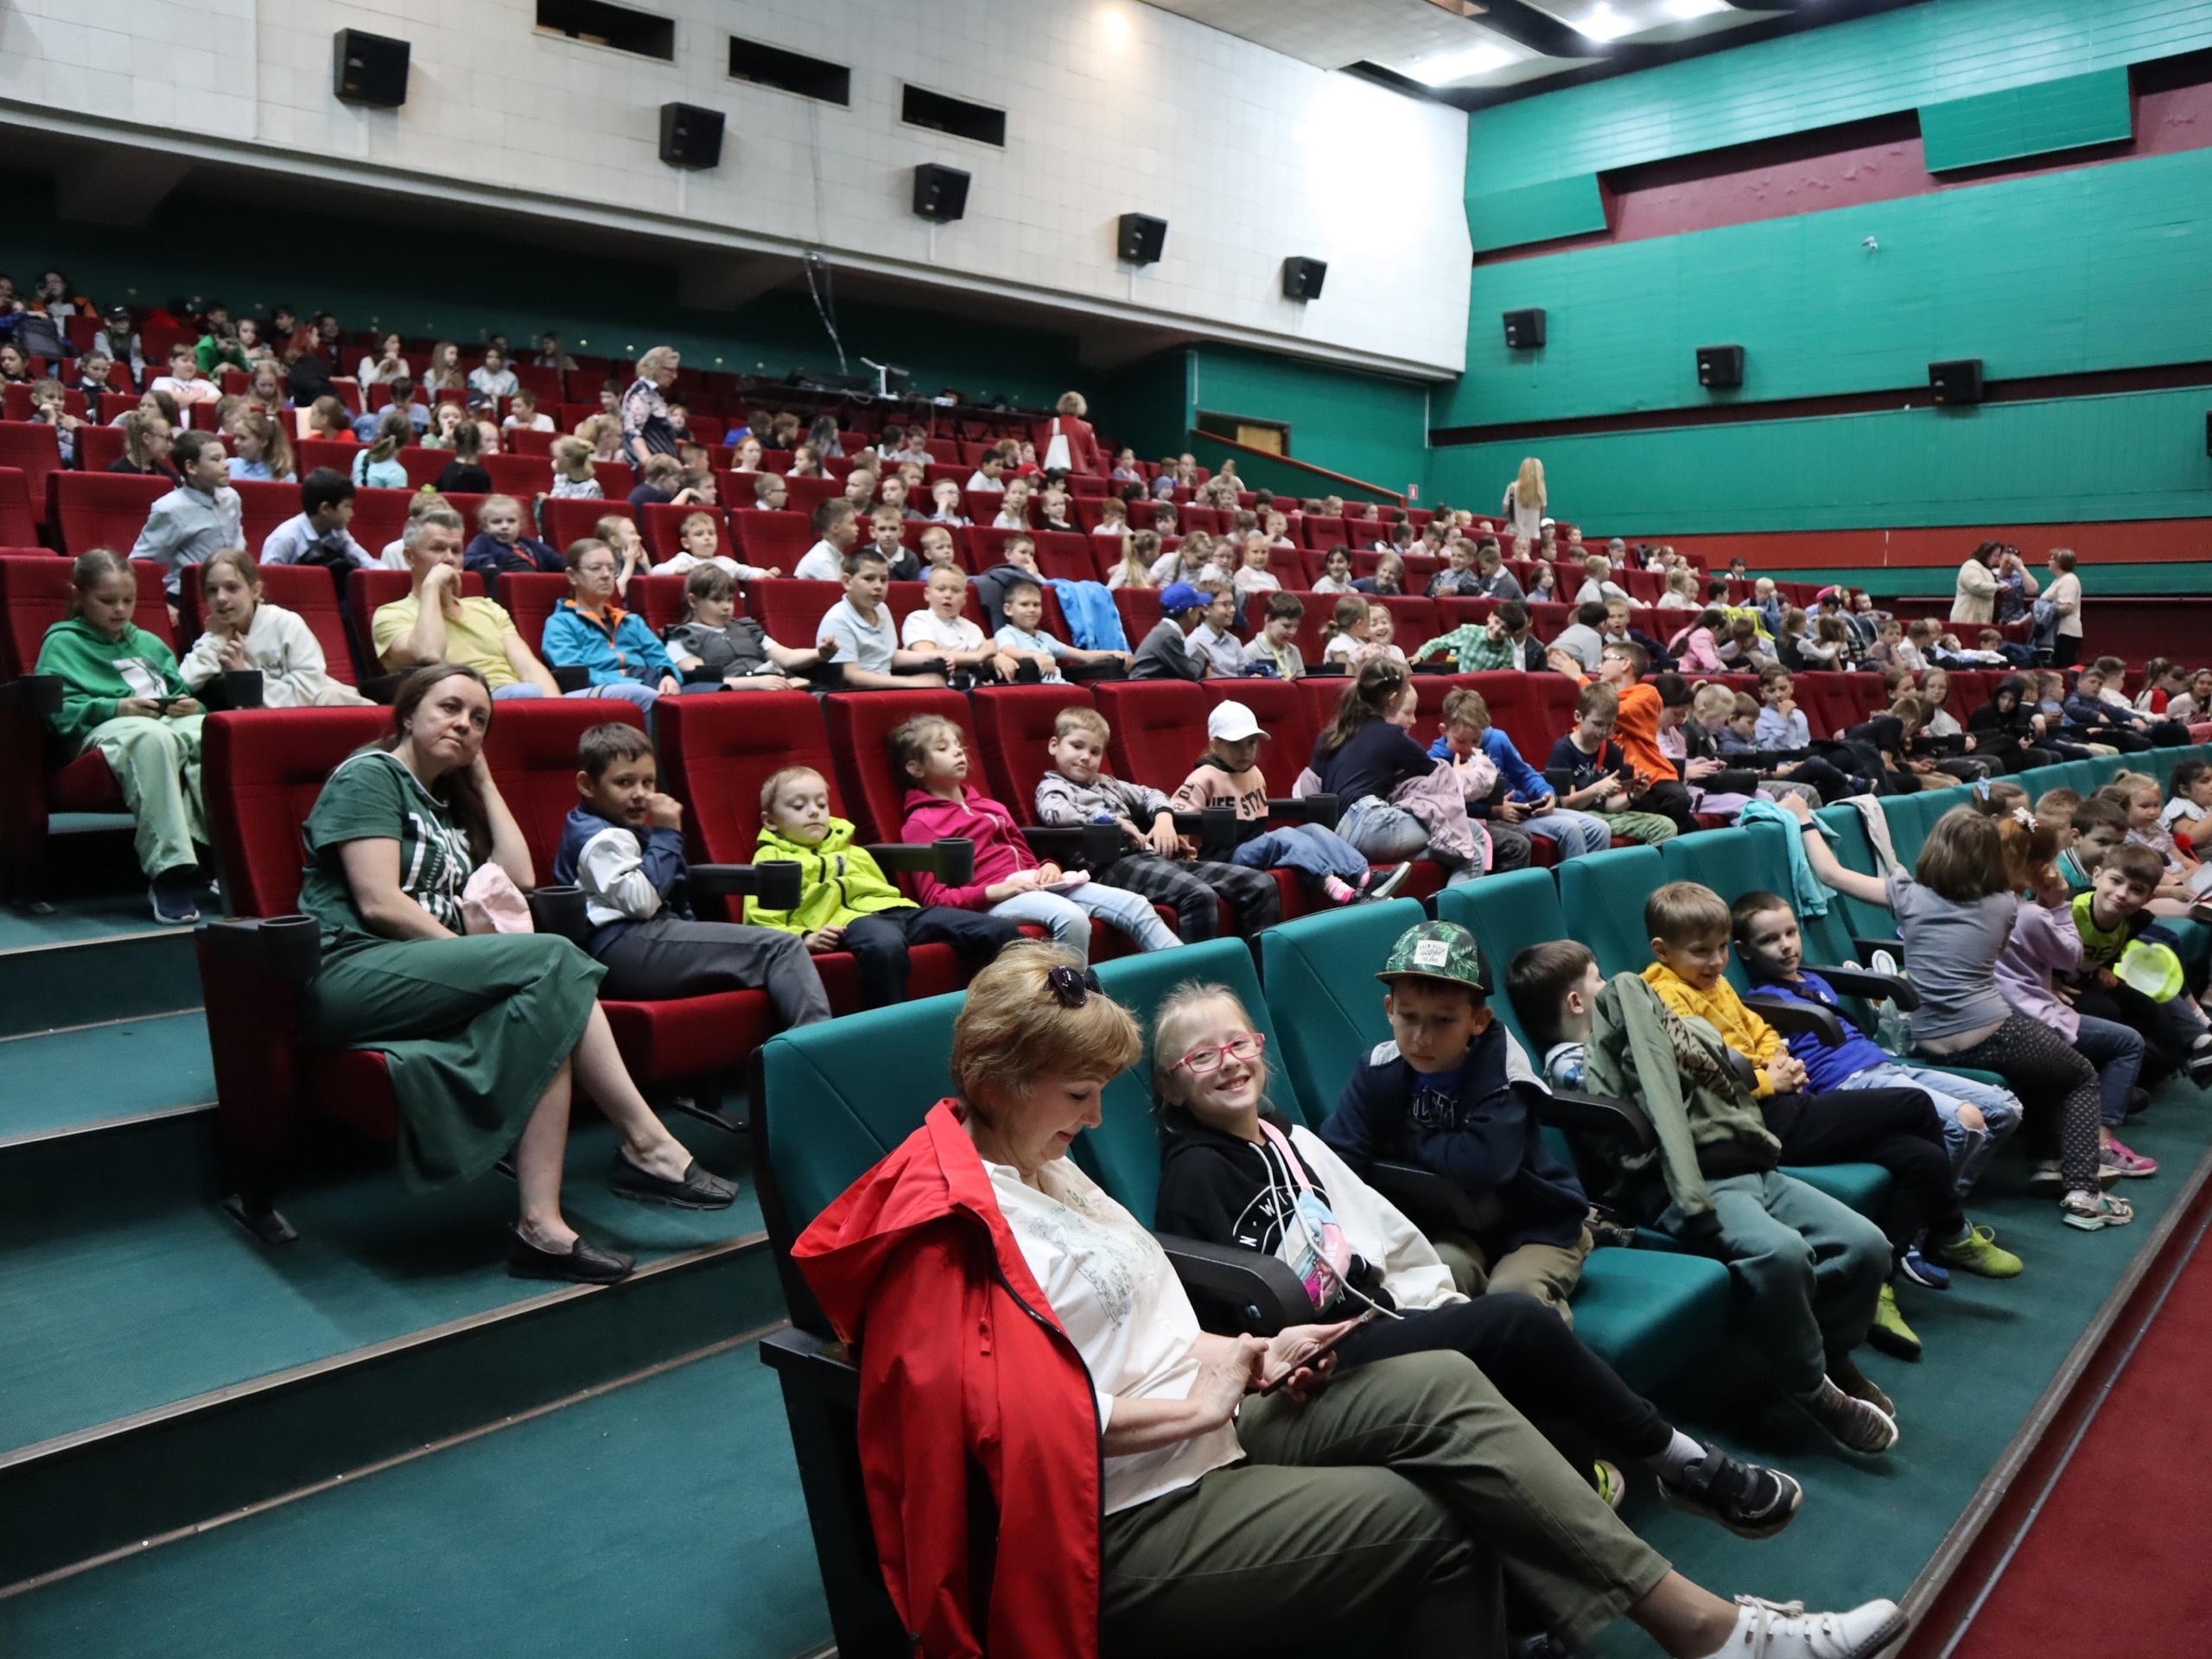 В честь окончания учебного года в культурно-досуговом центре "Подвиг" проходят бесплатные кинопоказы для школьников Колпинского района.